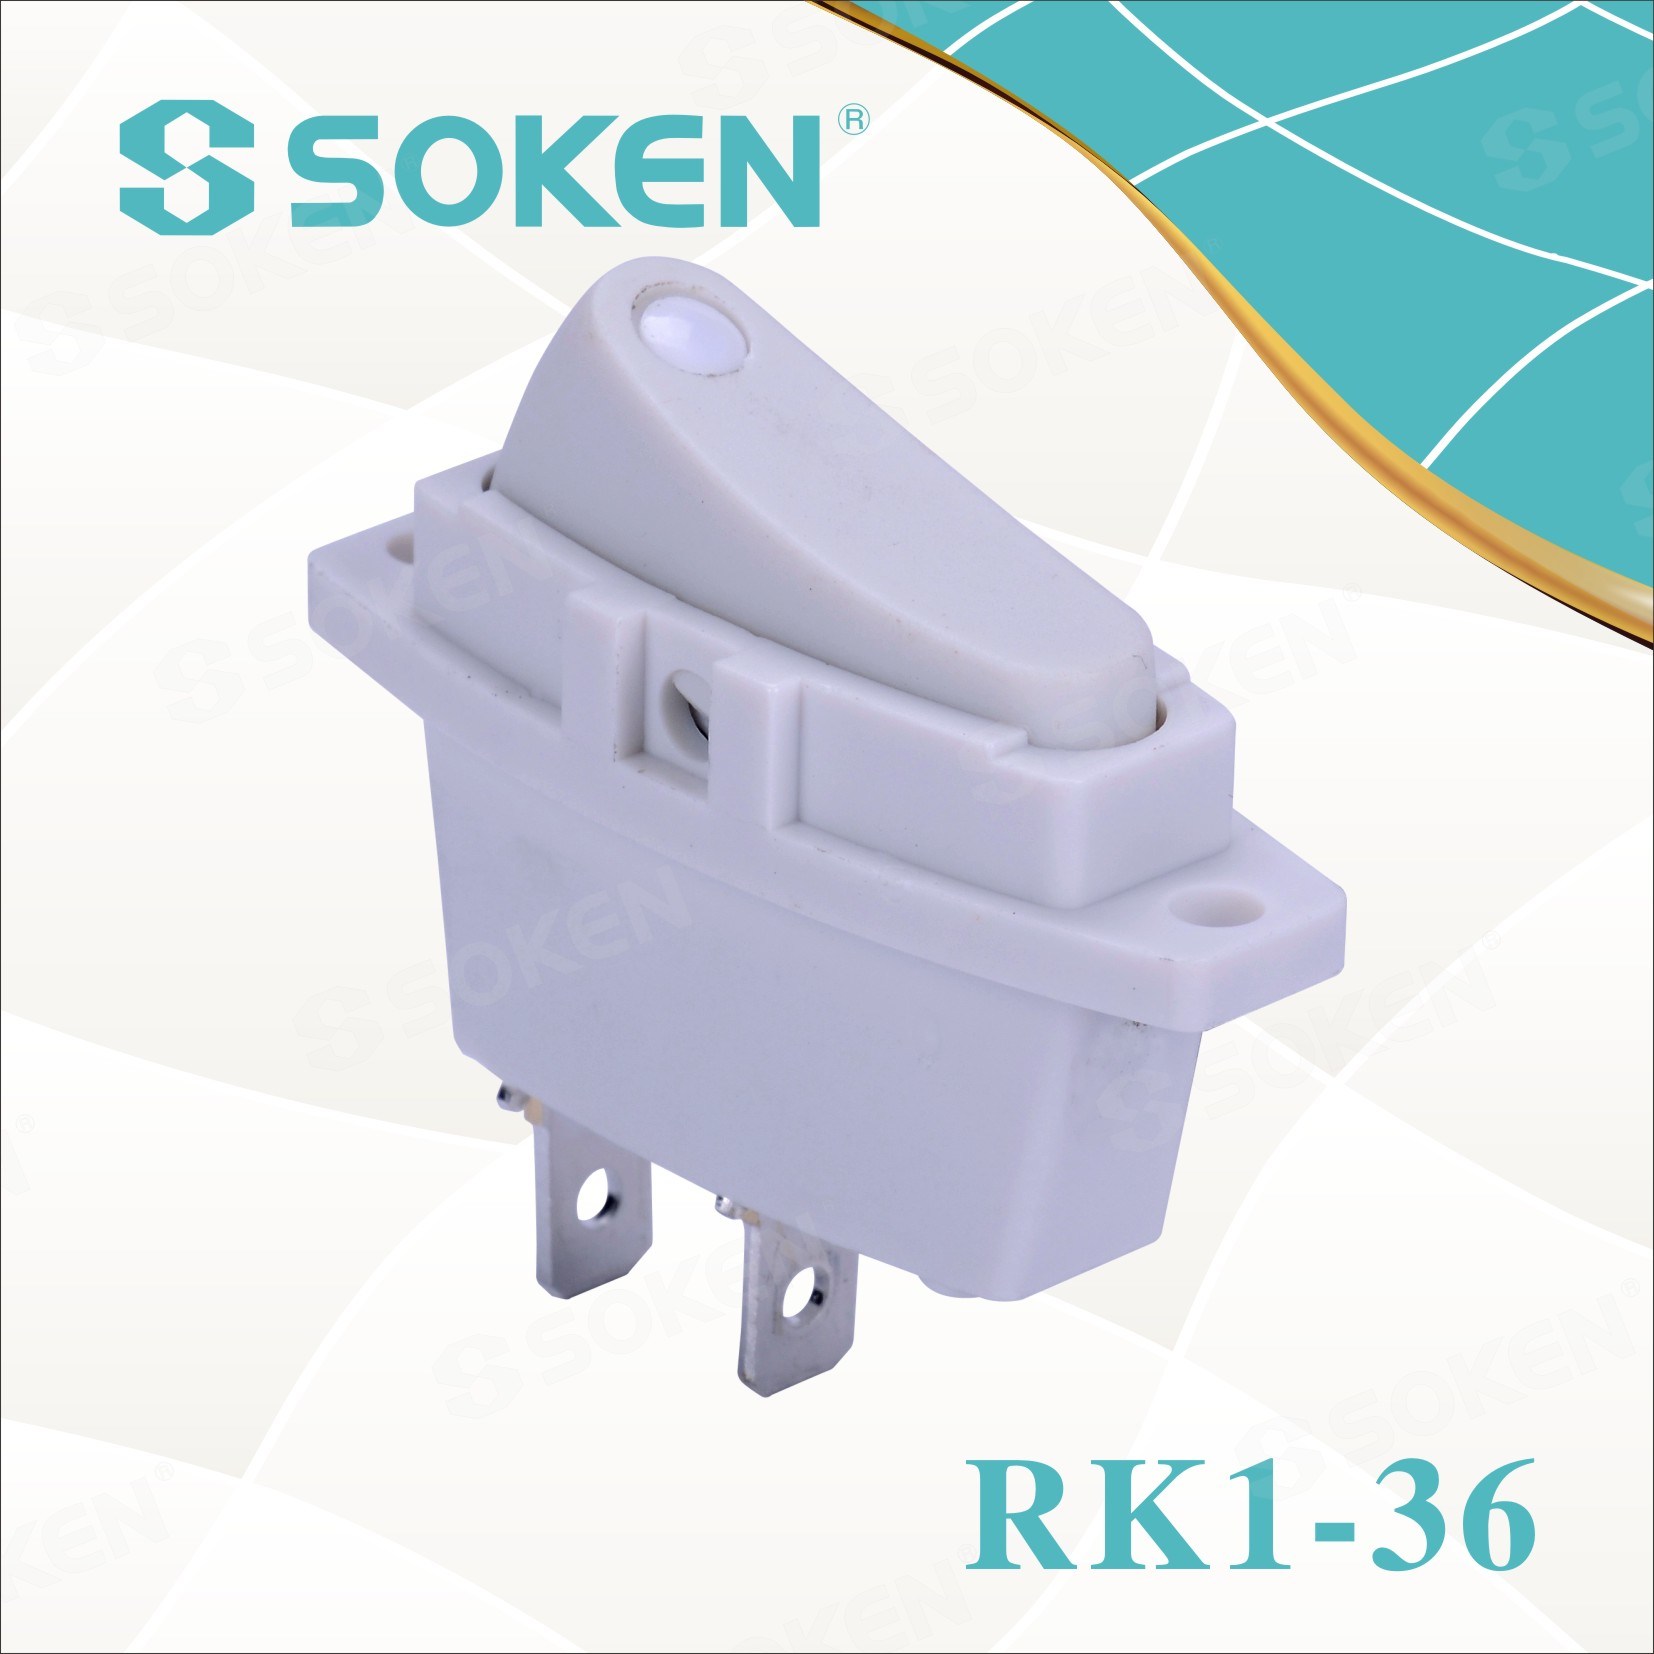 Soken Rk1-36 1X1 on off Rocker Switch